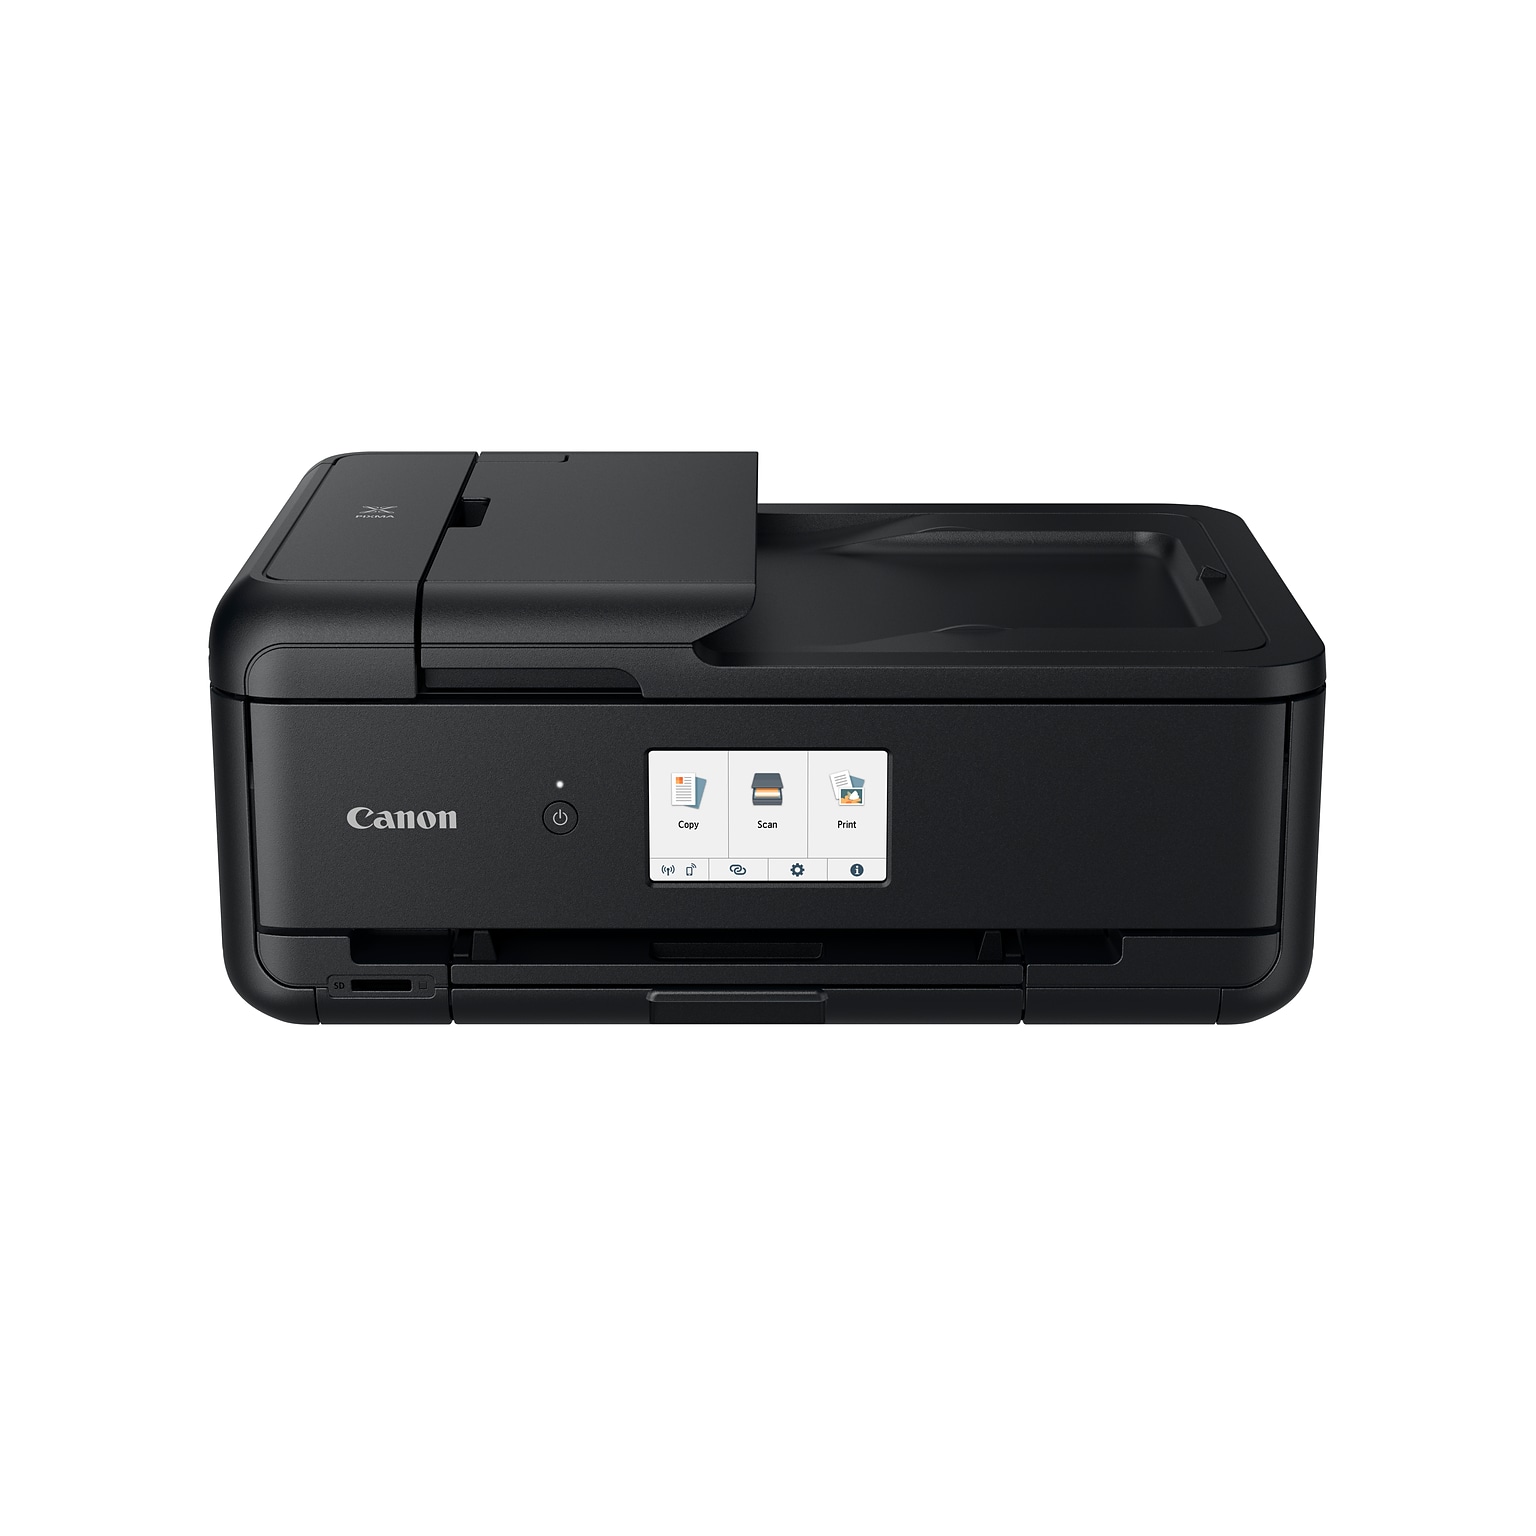 Canon PIXMA TS9520 Wireless Color Inkjet All-in-One Printer, Black (2988C002)